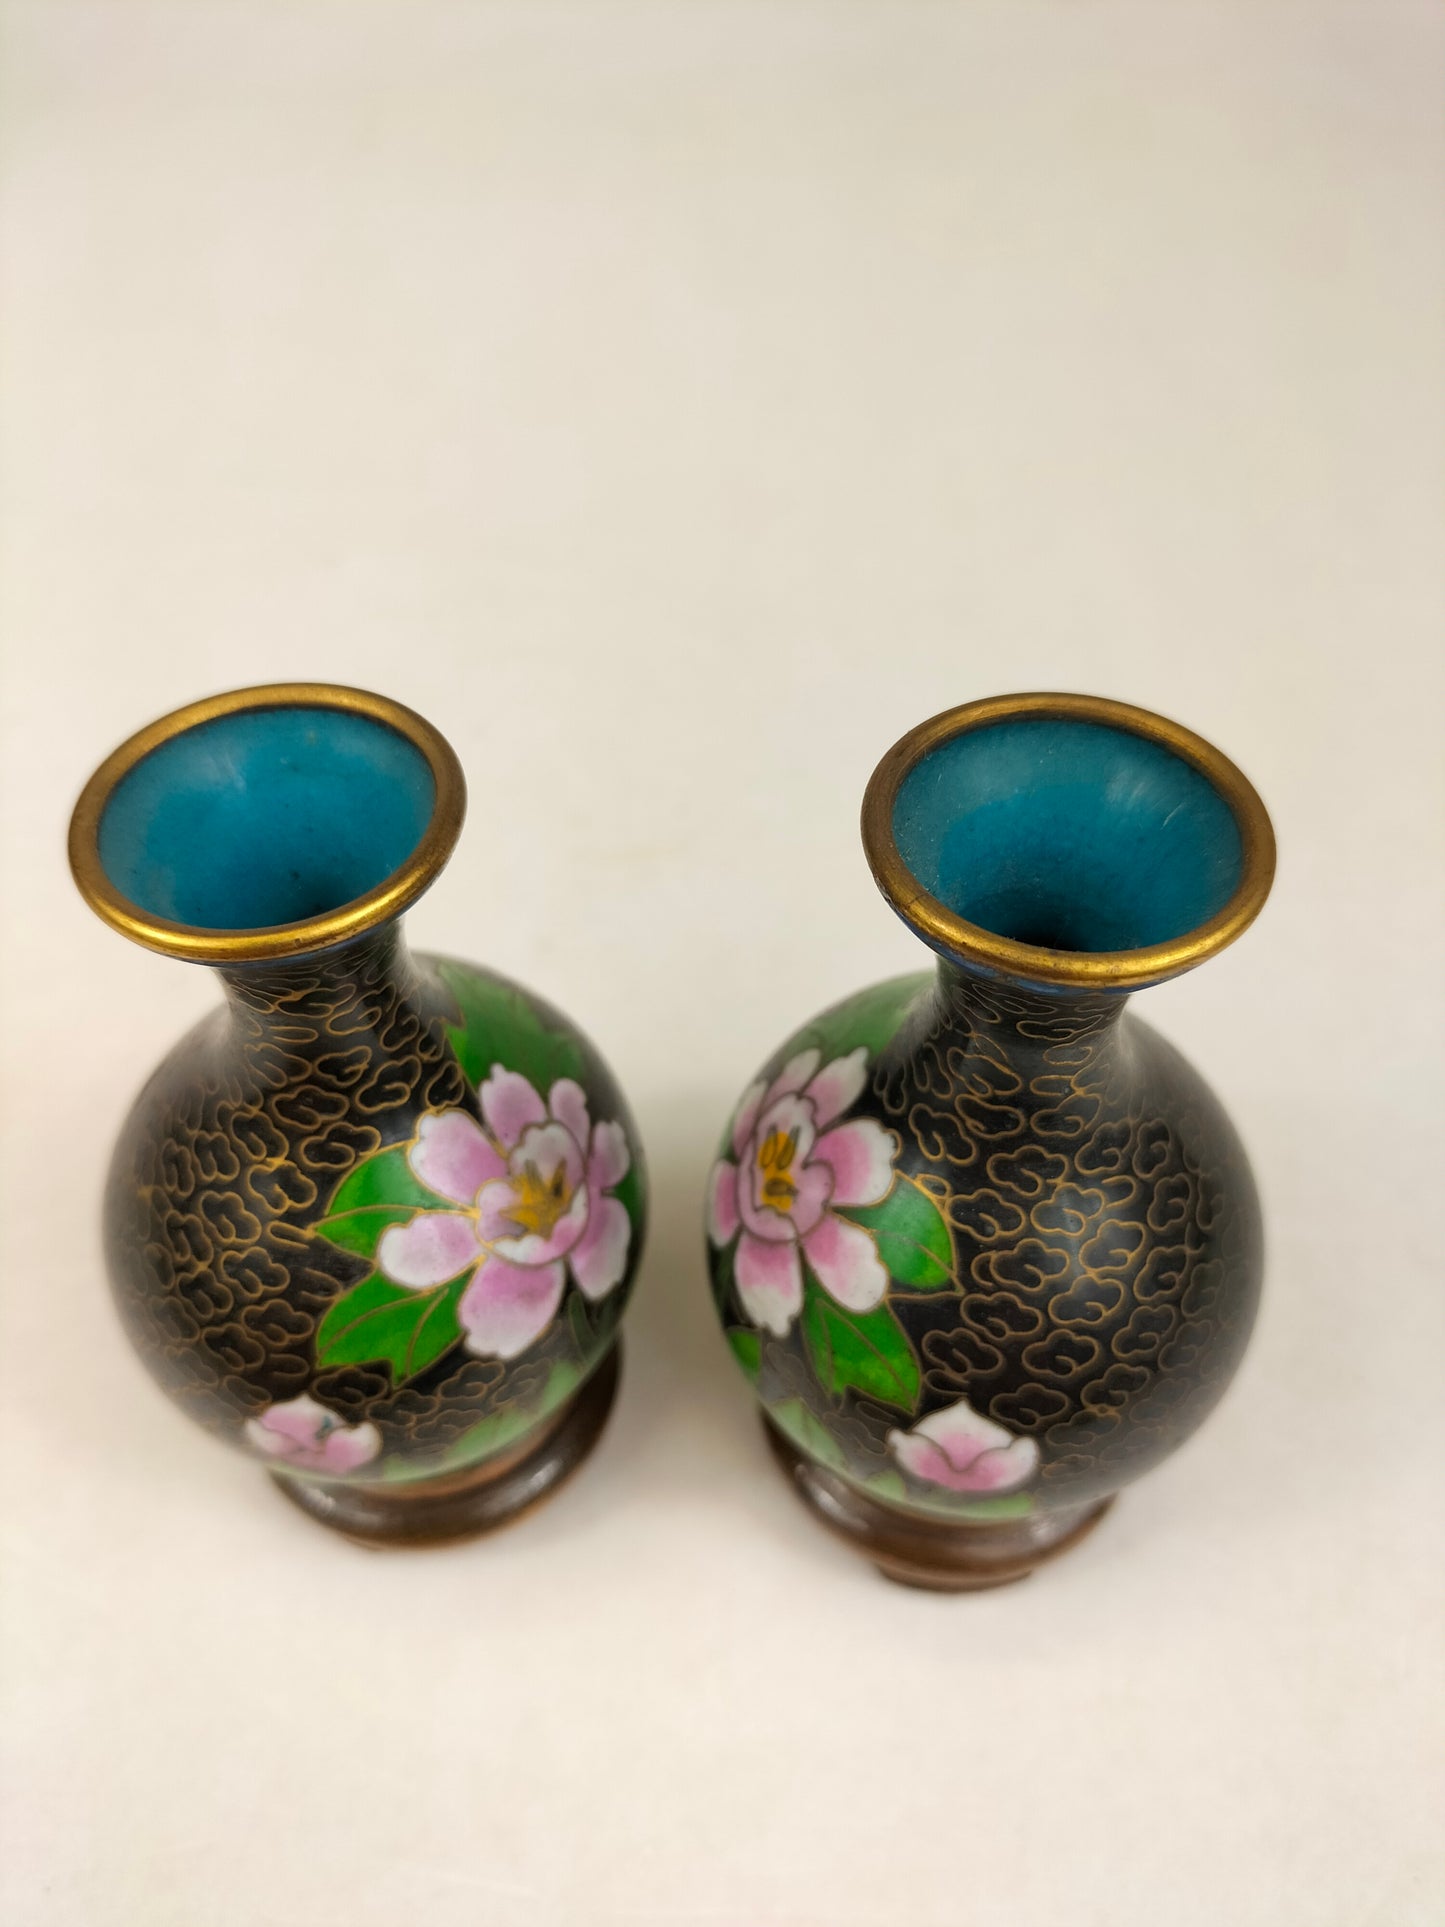 Par de vasos chineses de garrafa cloisonne decorados com flores // século XX